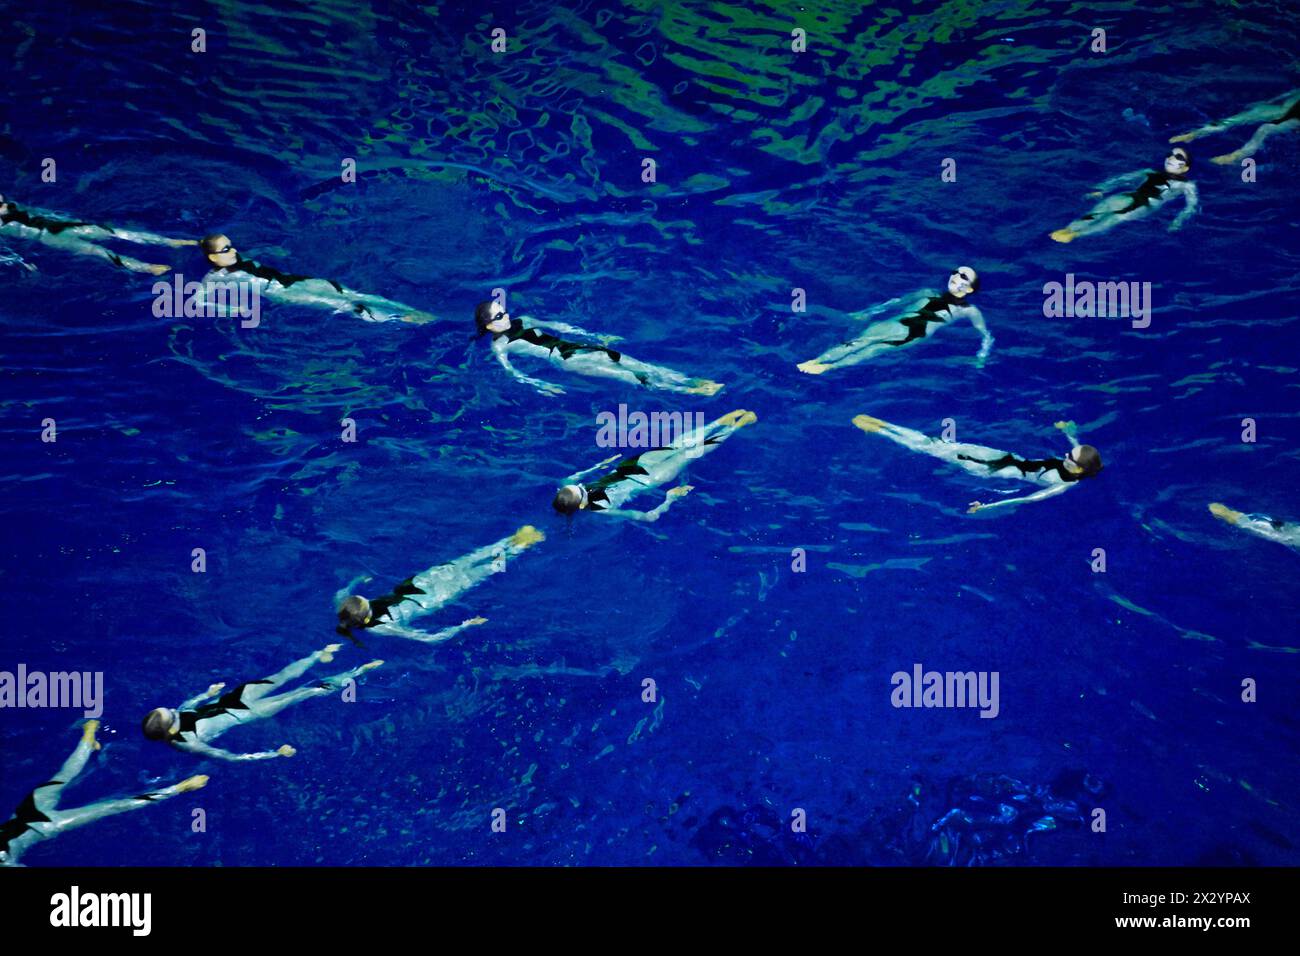 MOSKAU - 4. JAN: Synchronisierte Schwimmer-Performance im Schwimmbad des Sportkomplexes Olympyisky während der Musical Show Through the Looking Glass, Januar Stockfoto